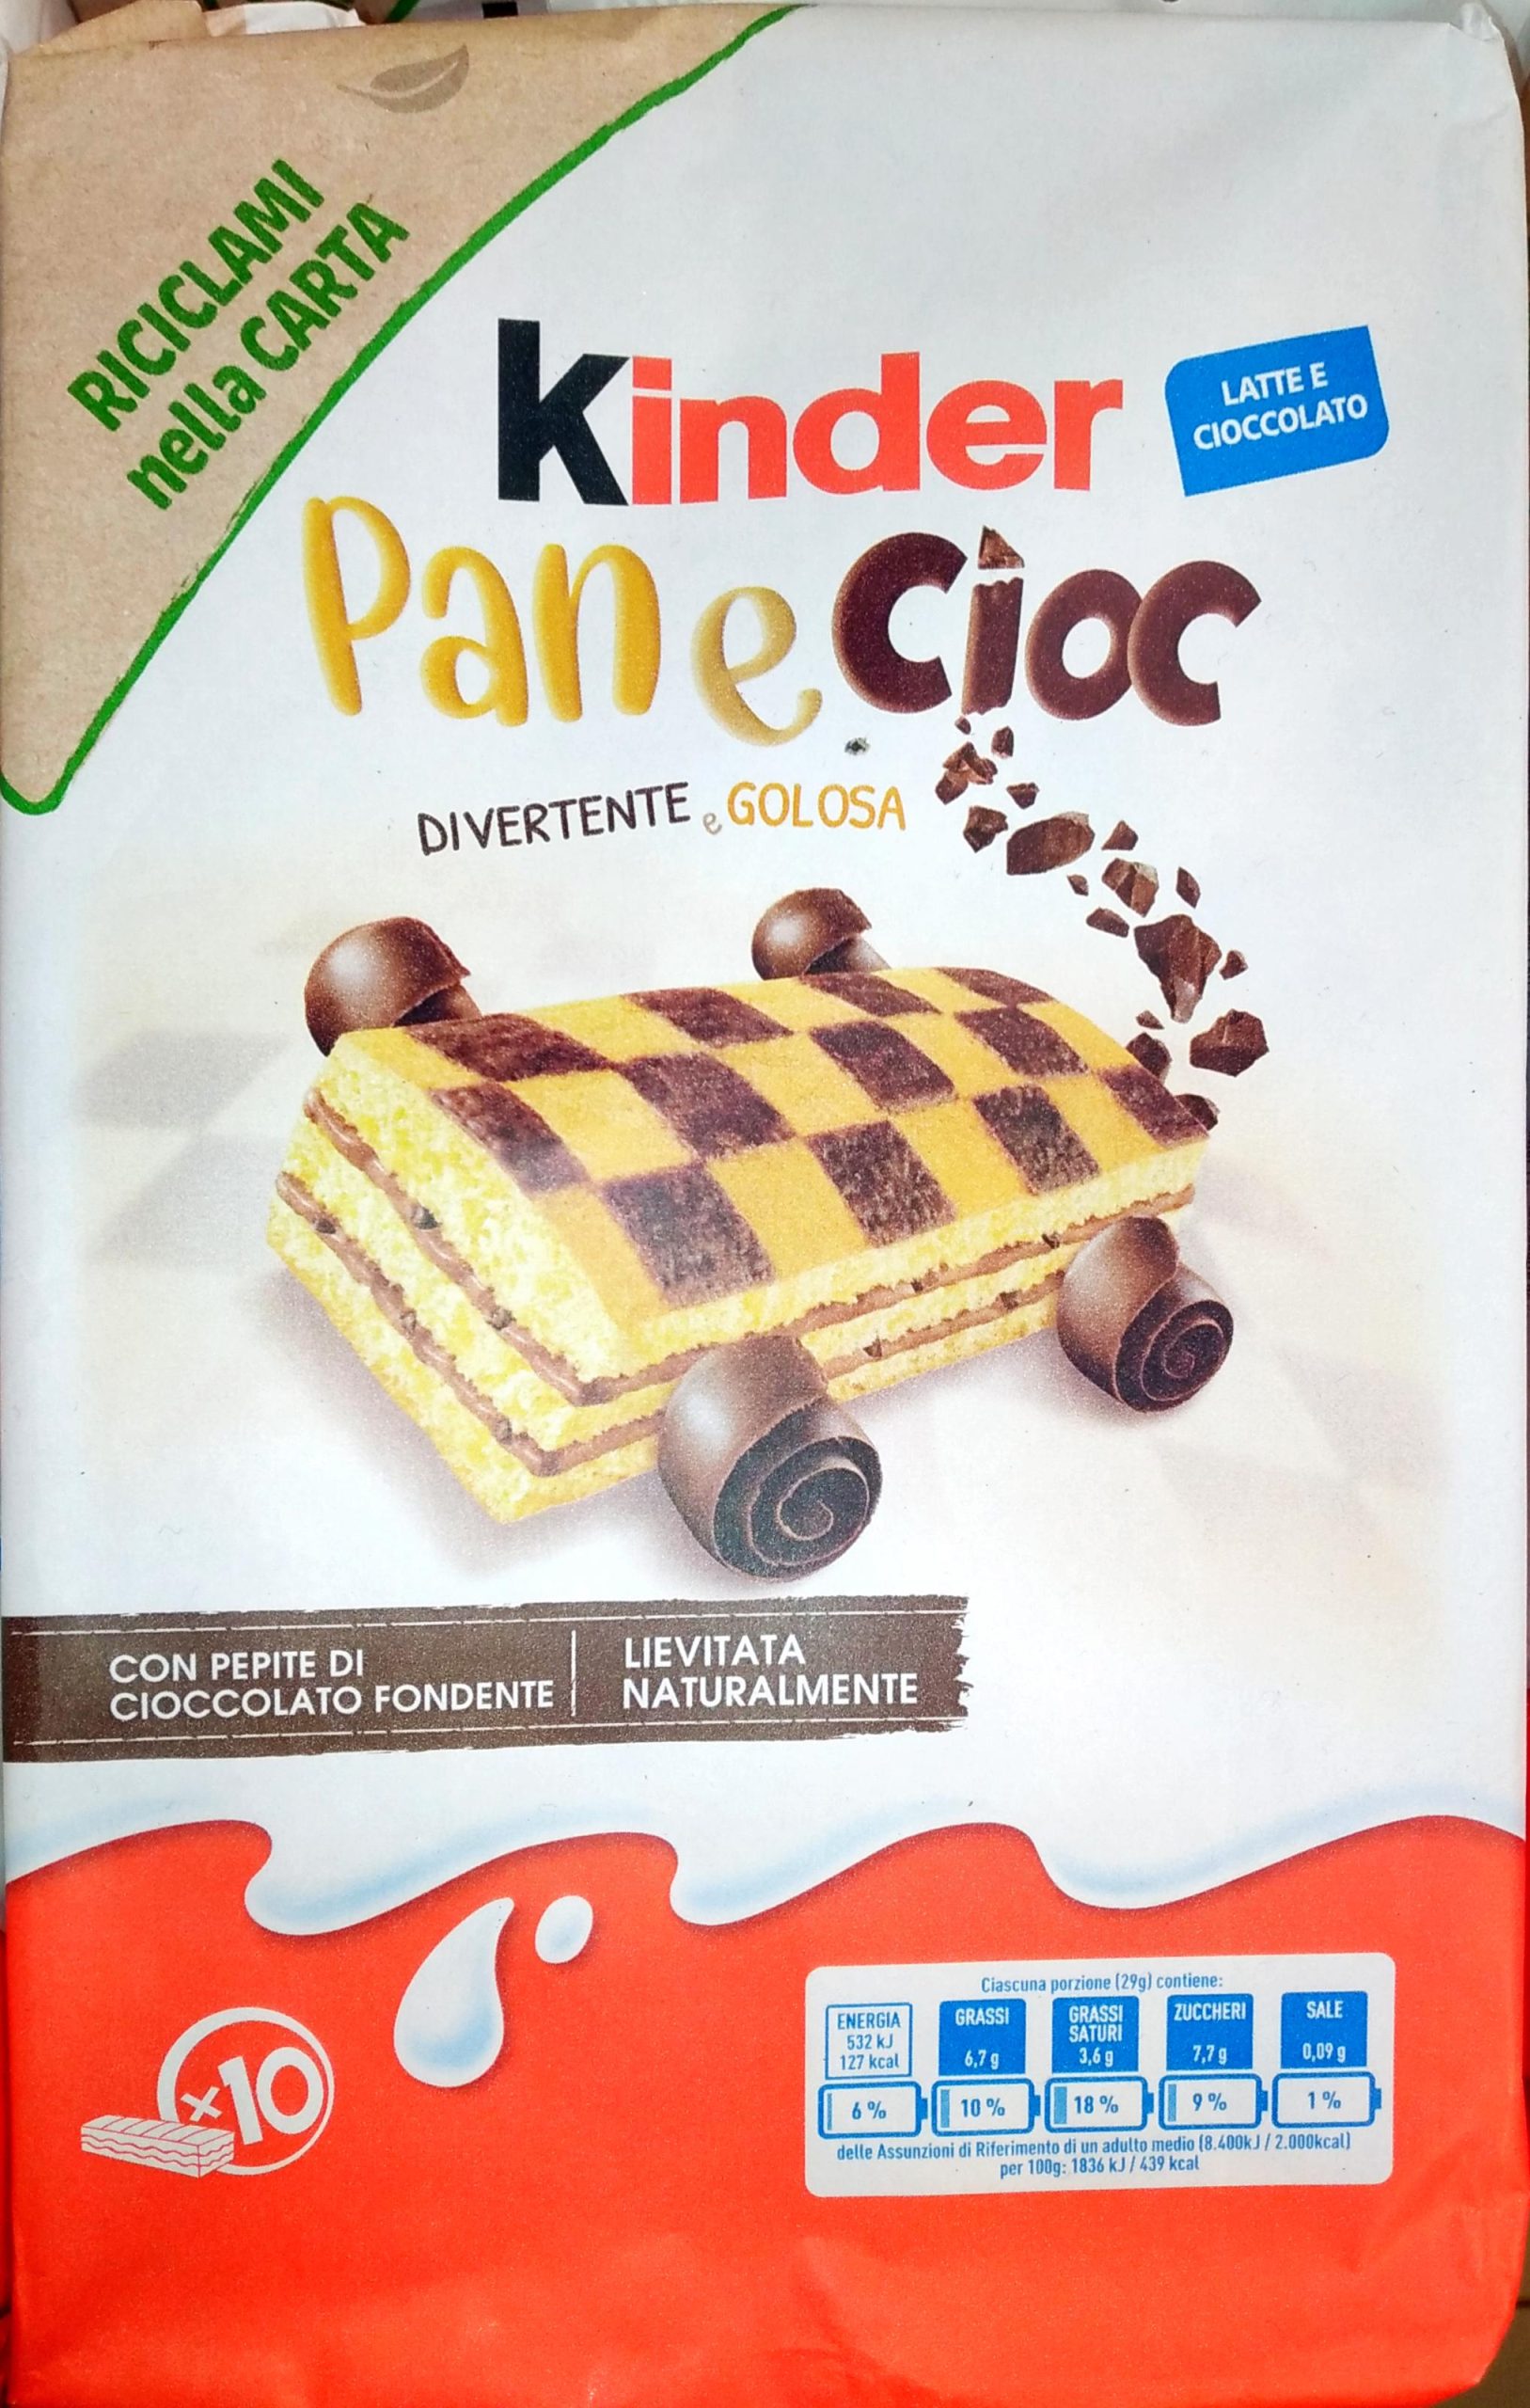 Découvrez les derniers délices de Kinder : Plumcake au cacao et Kinder  au yaourt à la grecque, Kinder Colazione Piu 5 céréales, Kinder Pane Cioc et Kinder Brioss.